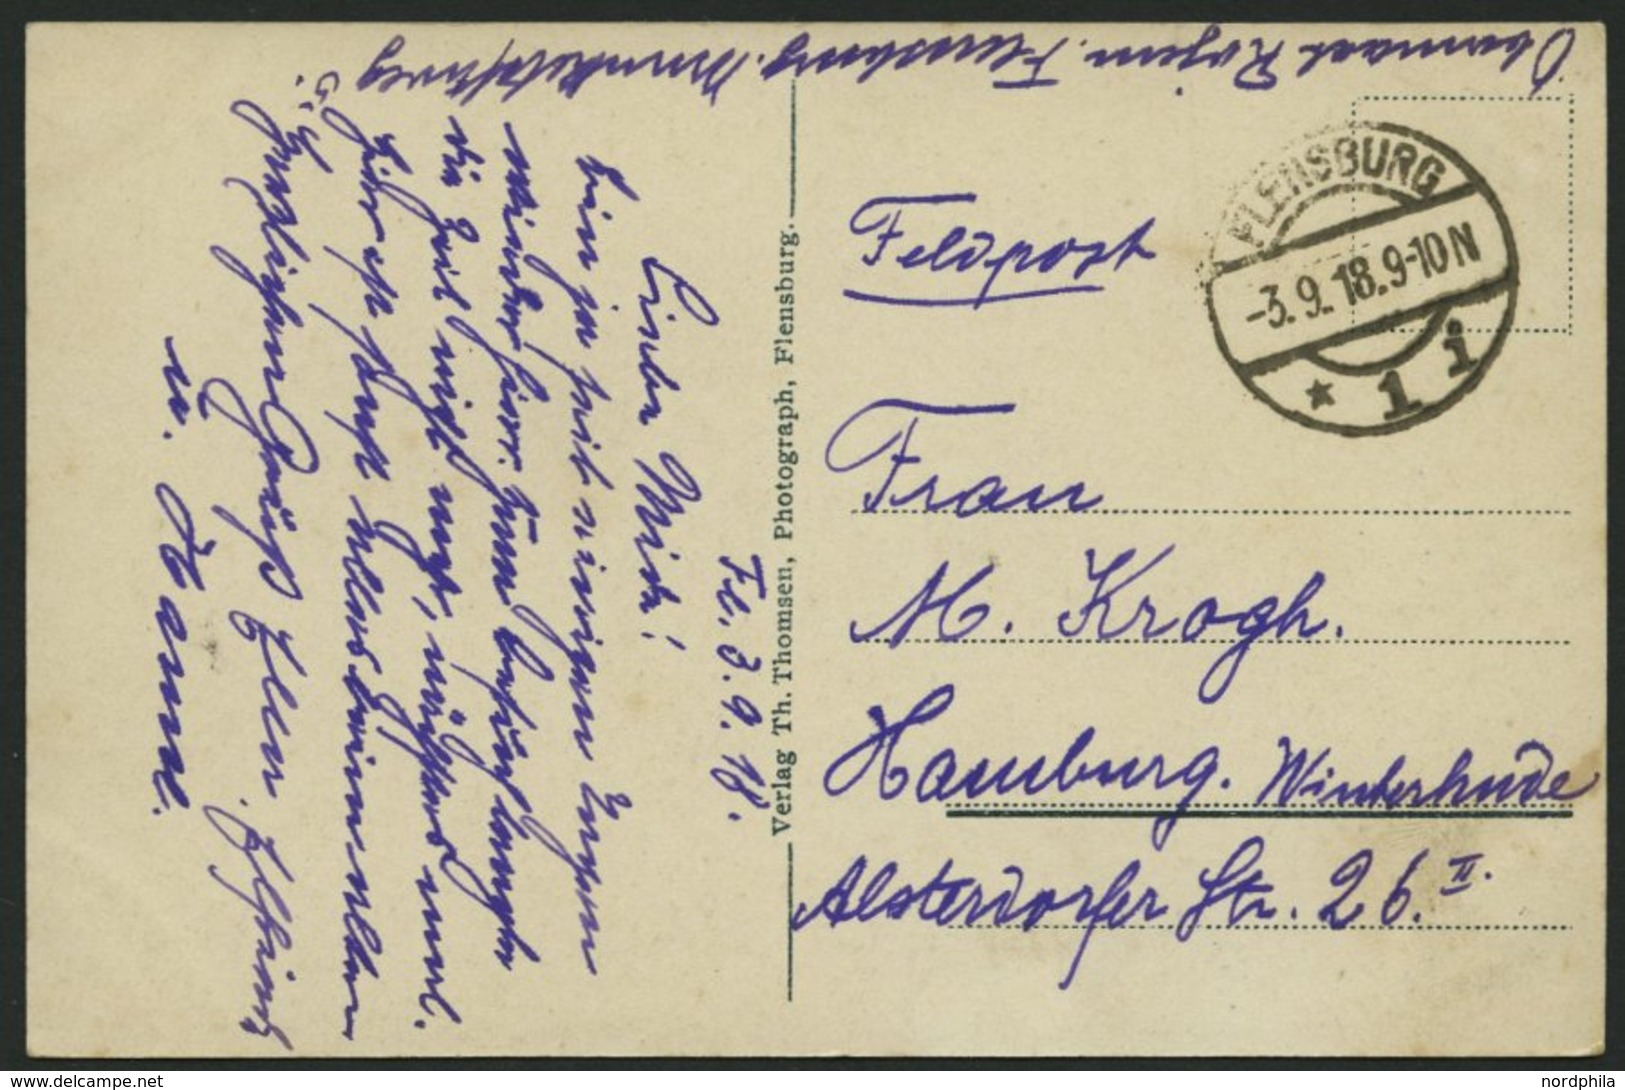 ALTE POSTKARTEN - SCHIFFE KAISERL. MARINE S.M.S. König Wilhelm In Flensburg, Feldpostkarte - Guerre